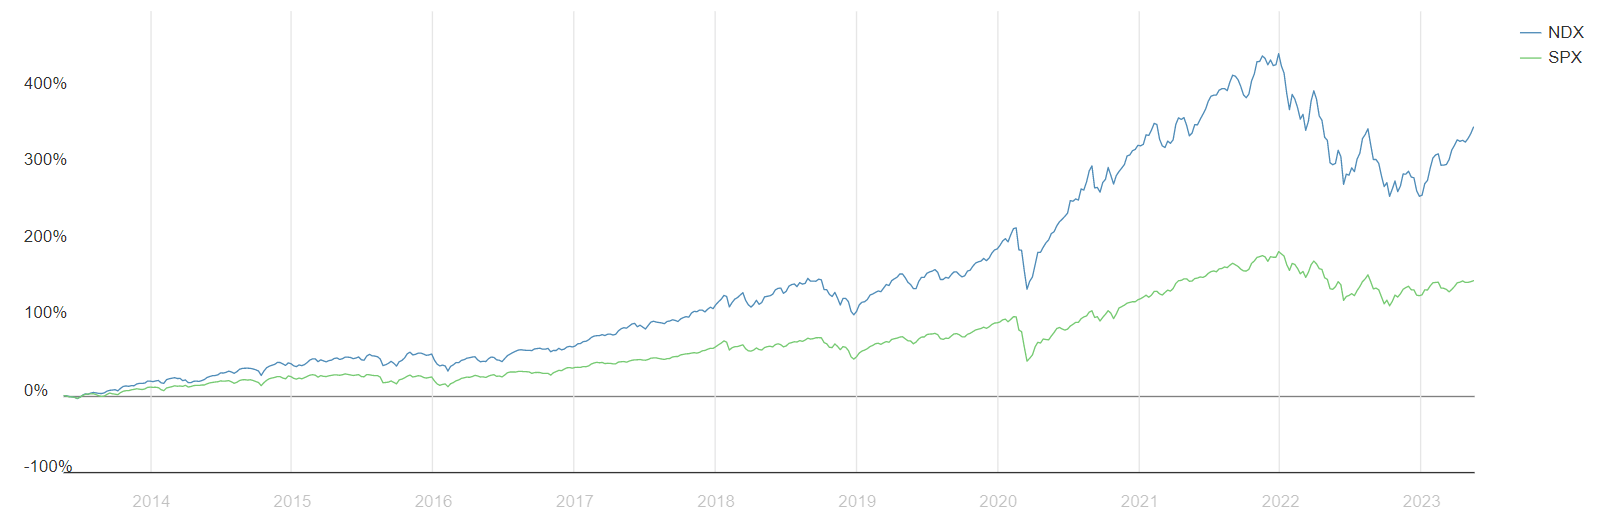 Nasdaq (NDX) vs S&P 500 (SPX) Price Chart 
